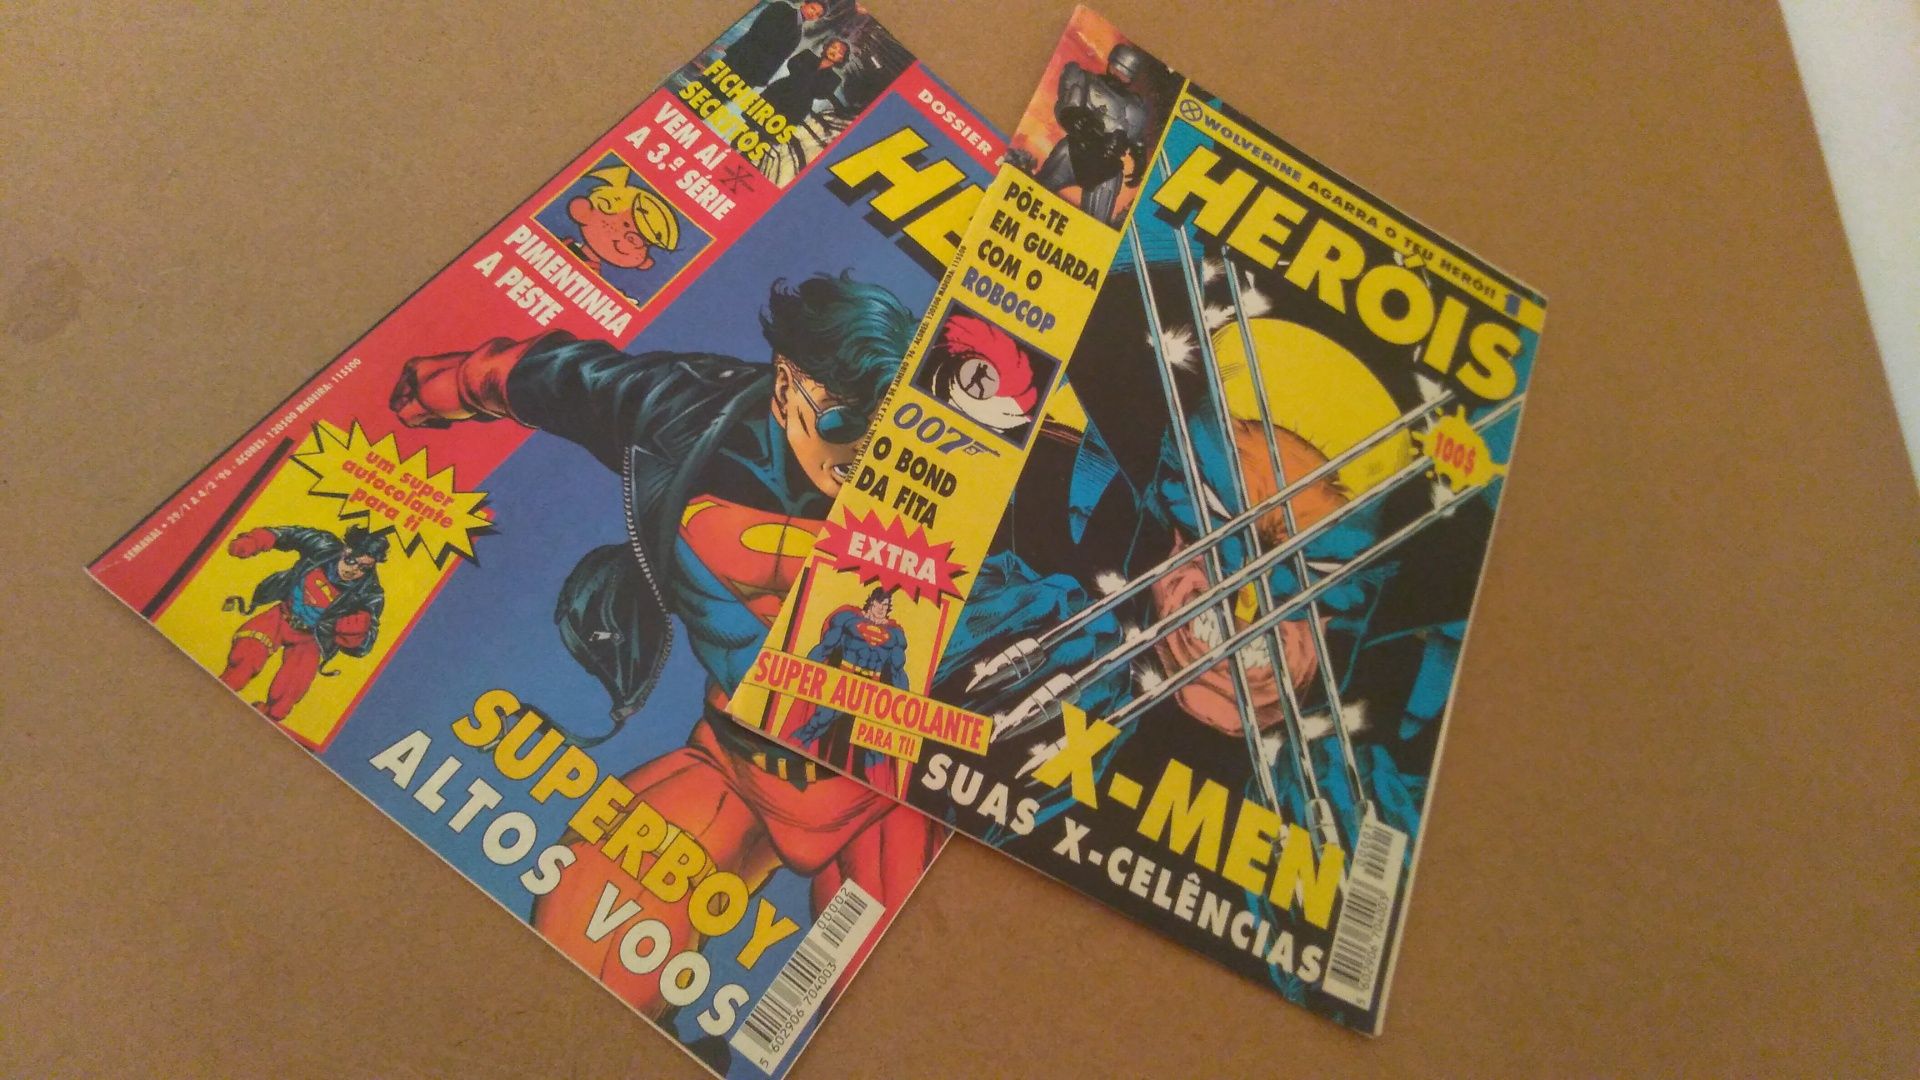 2 Revistas Heróis de 1996 com raro cromo incluídos